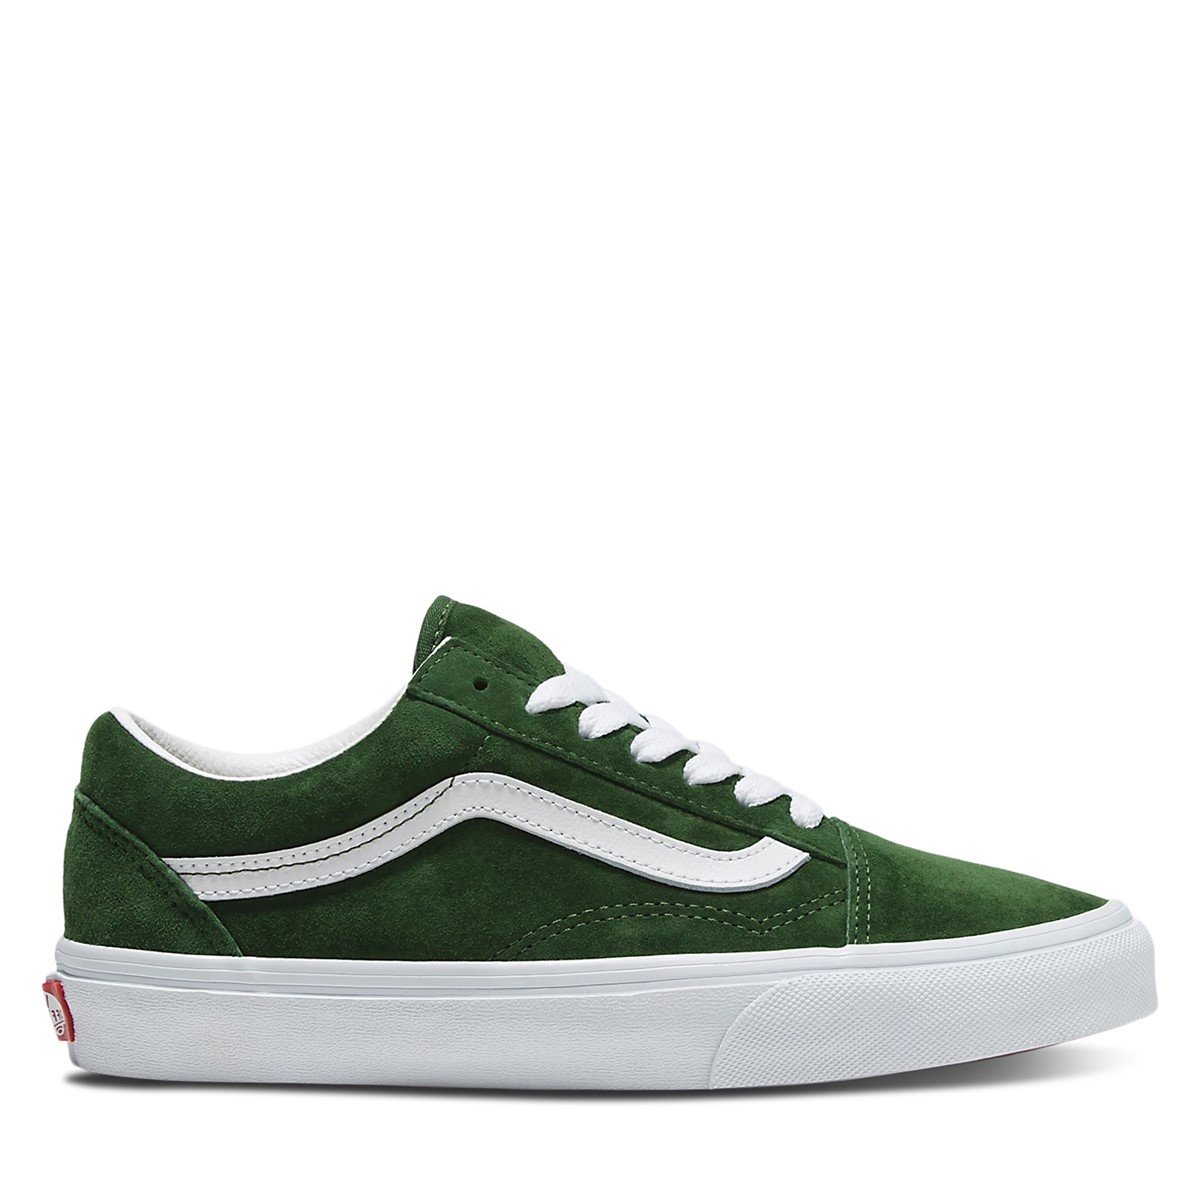 Vans Old Skool Suede Sneakers in Green/White